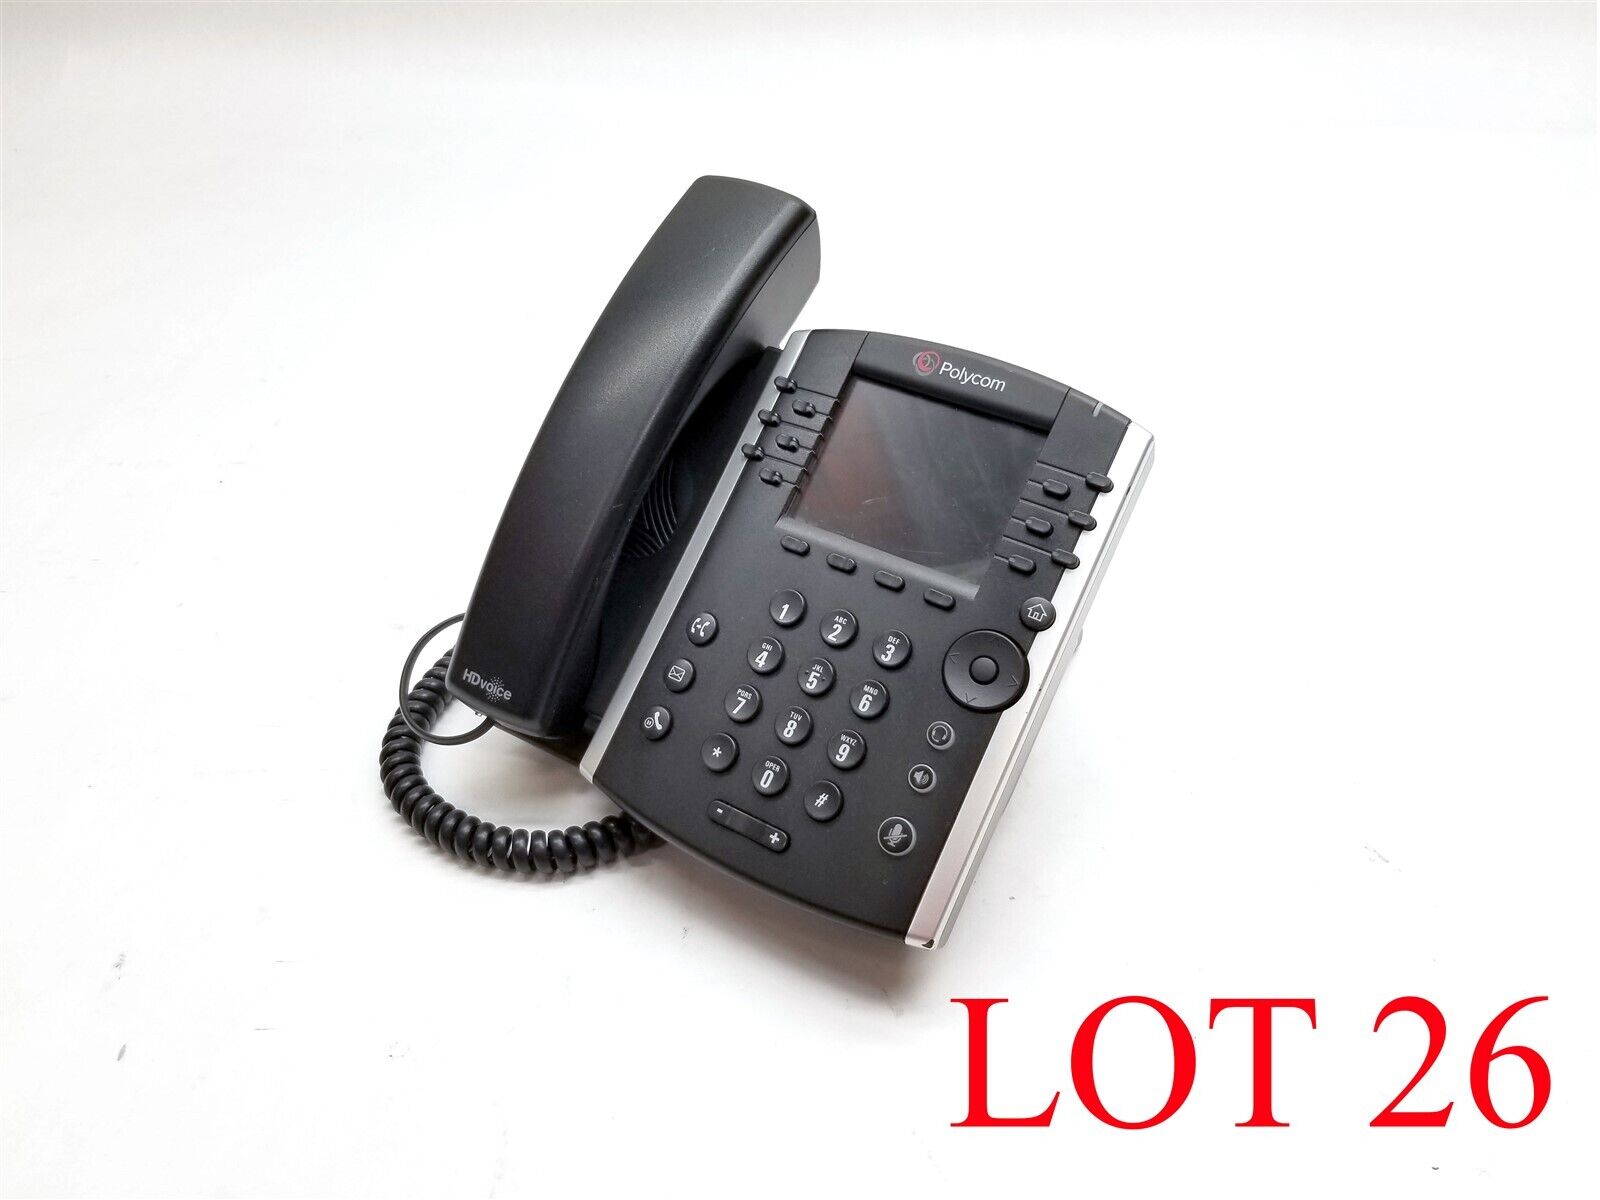 Polycom 12-Line IP Phone VVX 410 POE Gigabit VOIP Voice Business No PS Lot 26